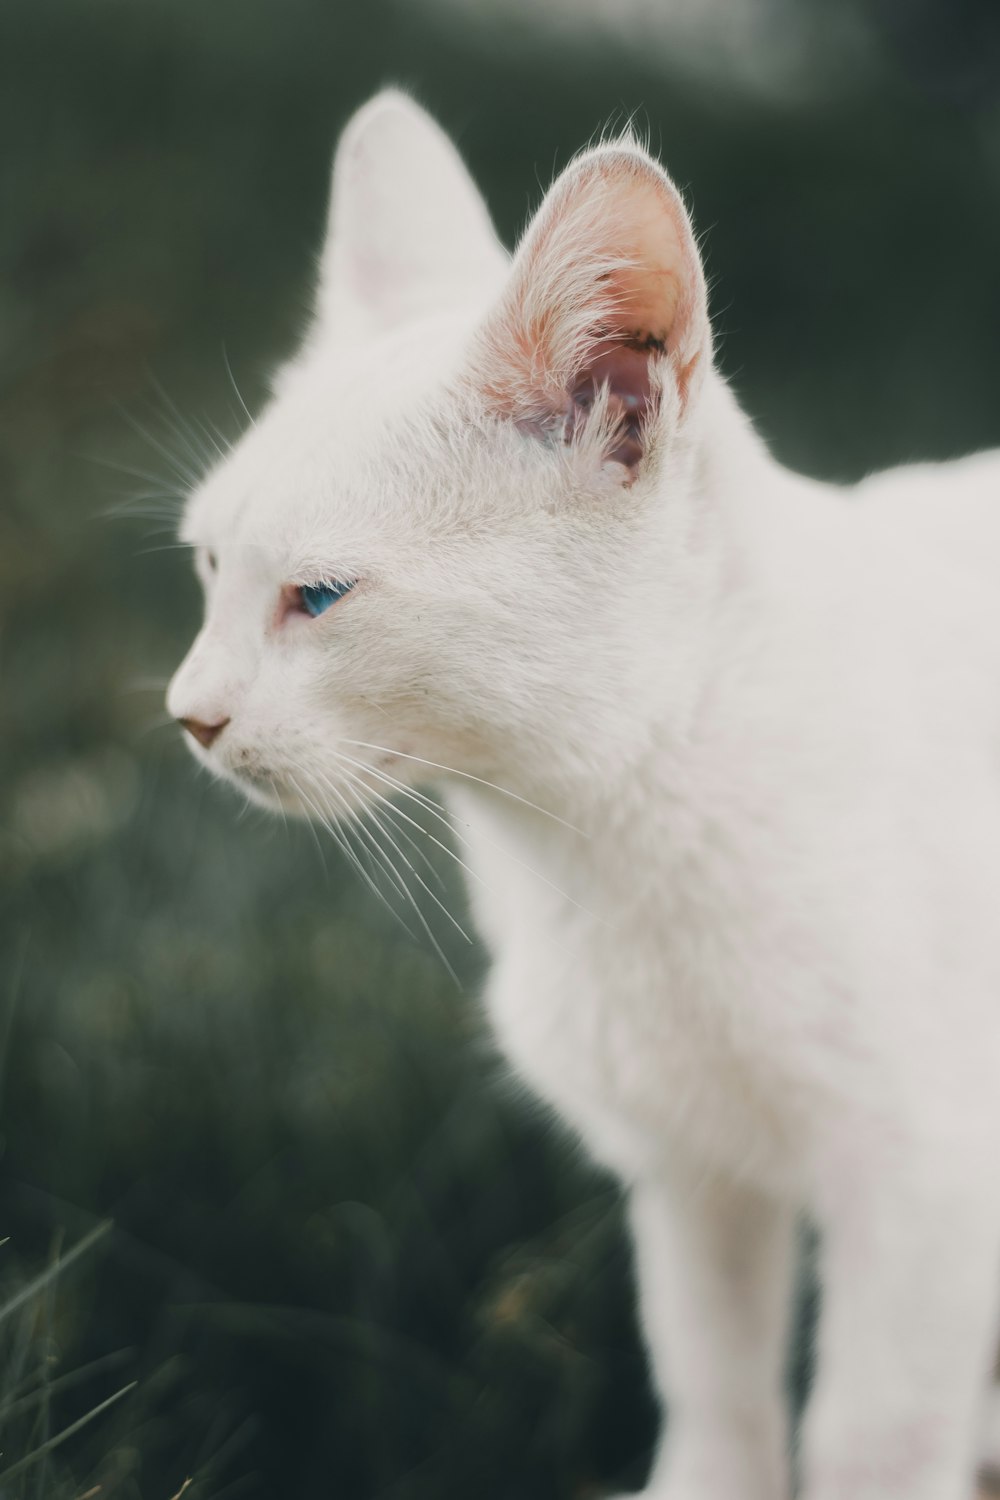 gato branco com olhos azuis